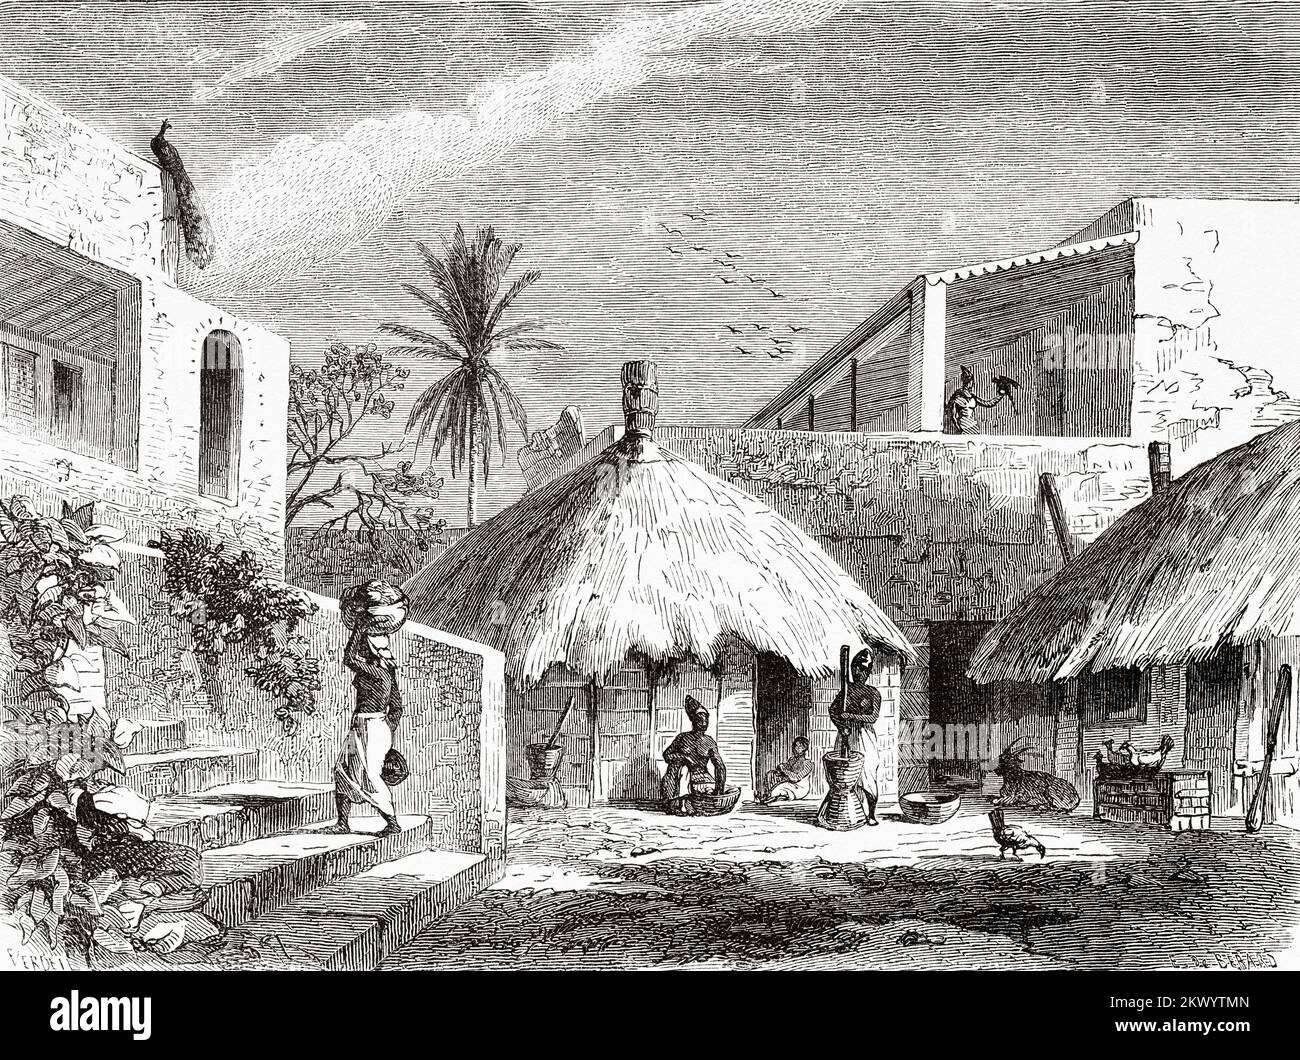 Intérieur d'une maison dans l'île de Goree dans l'océan Atlantique en dehors de Dakar au Sénégal, Afrique de l'Ouest. Voyages et expéditions au Sénégal et dans les pays voisins. Excursion militaire et géographique à l'est de Gorée dans les pays de Sine et Saloum 1859 Banque D'Images